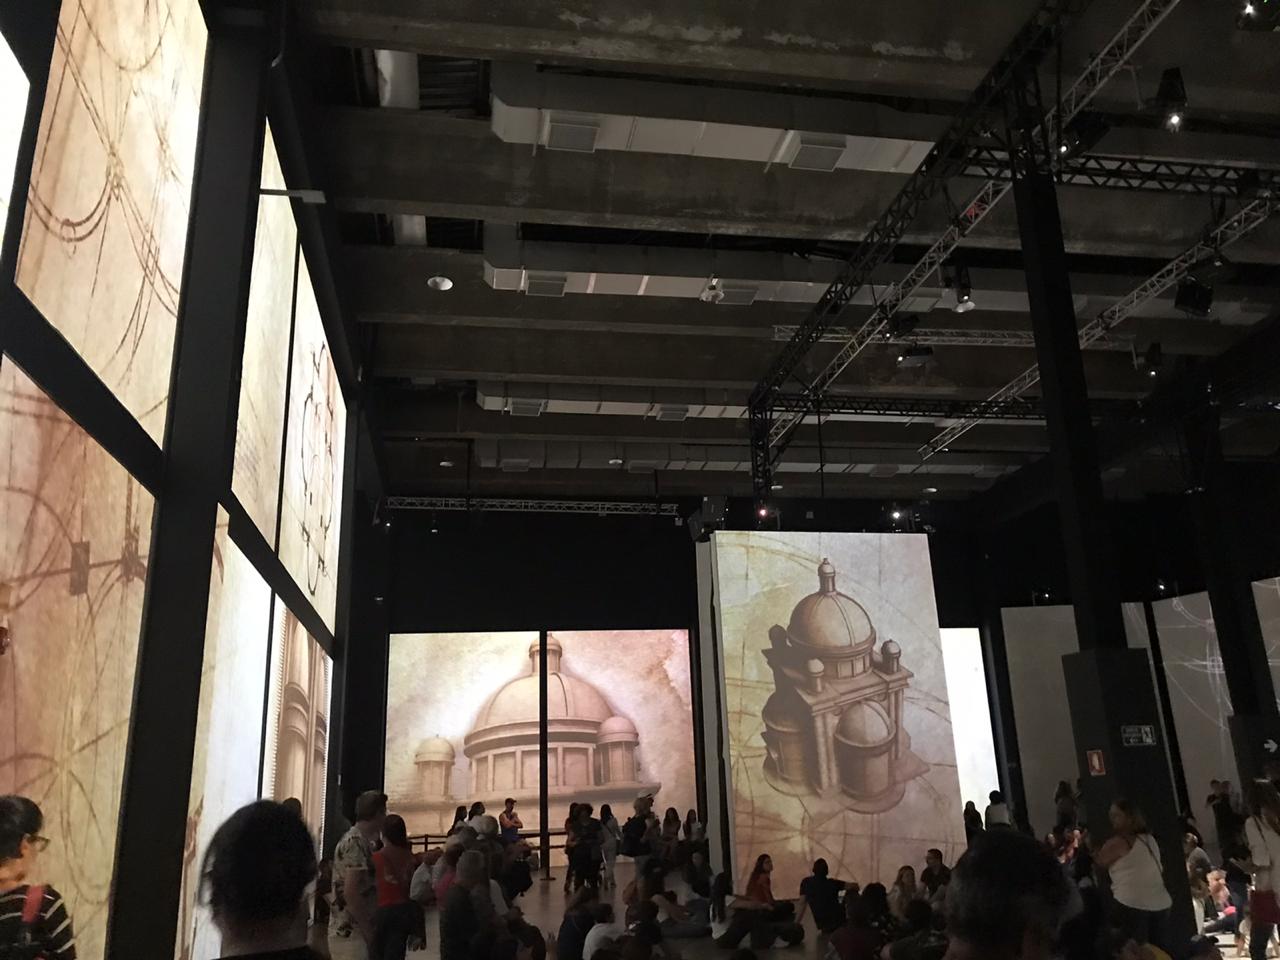 Painéis digitais com simulações dos prédios projetados por Leonardo da Vinci.